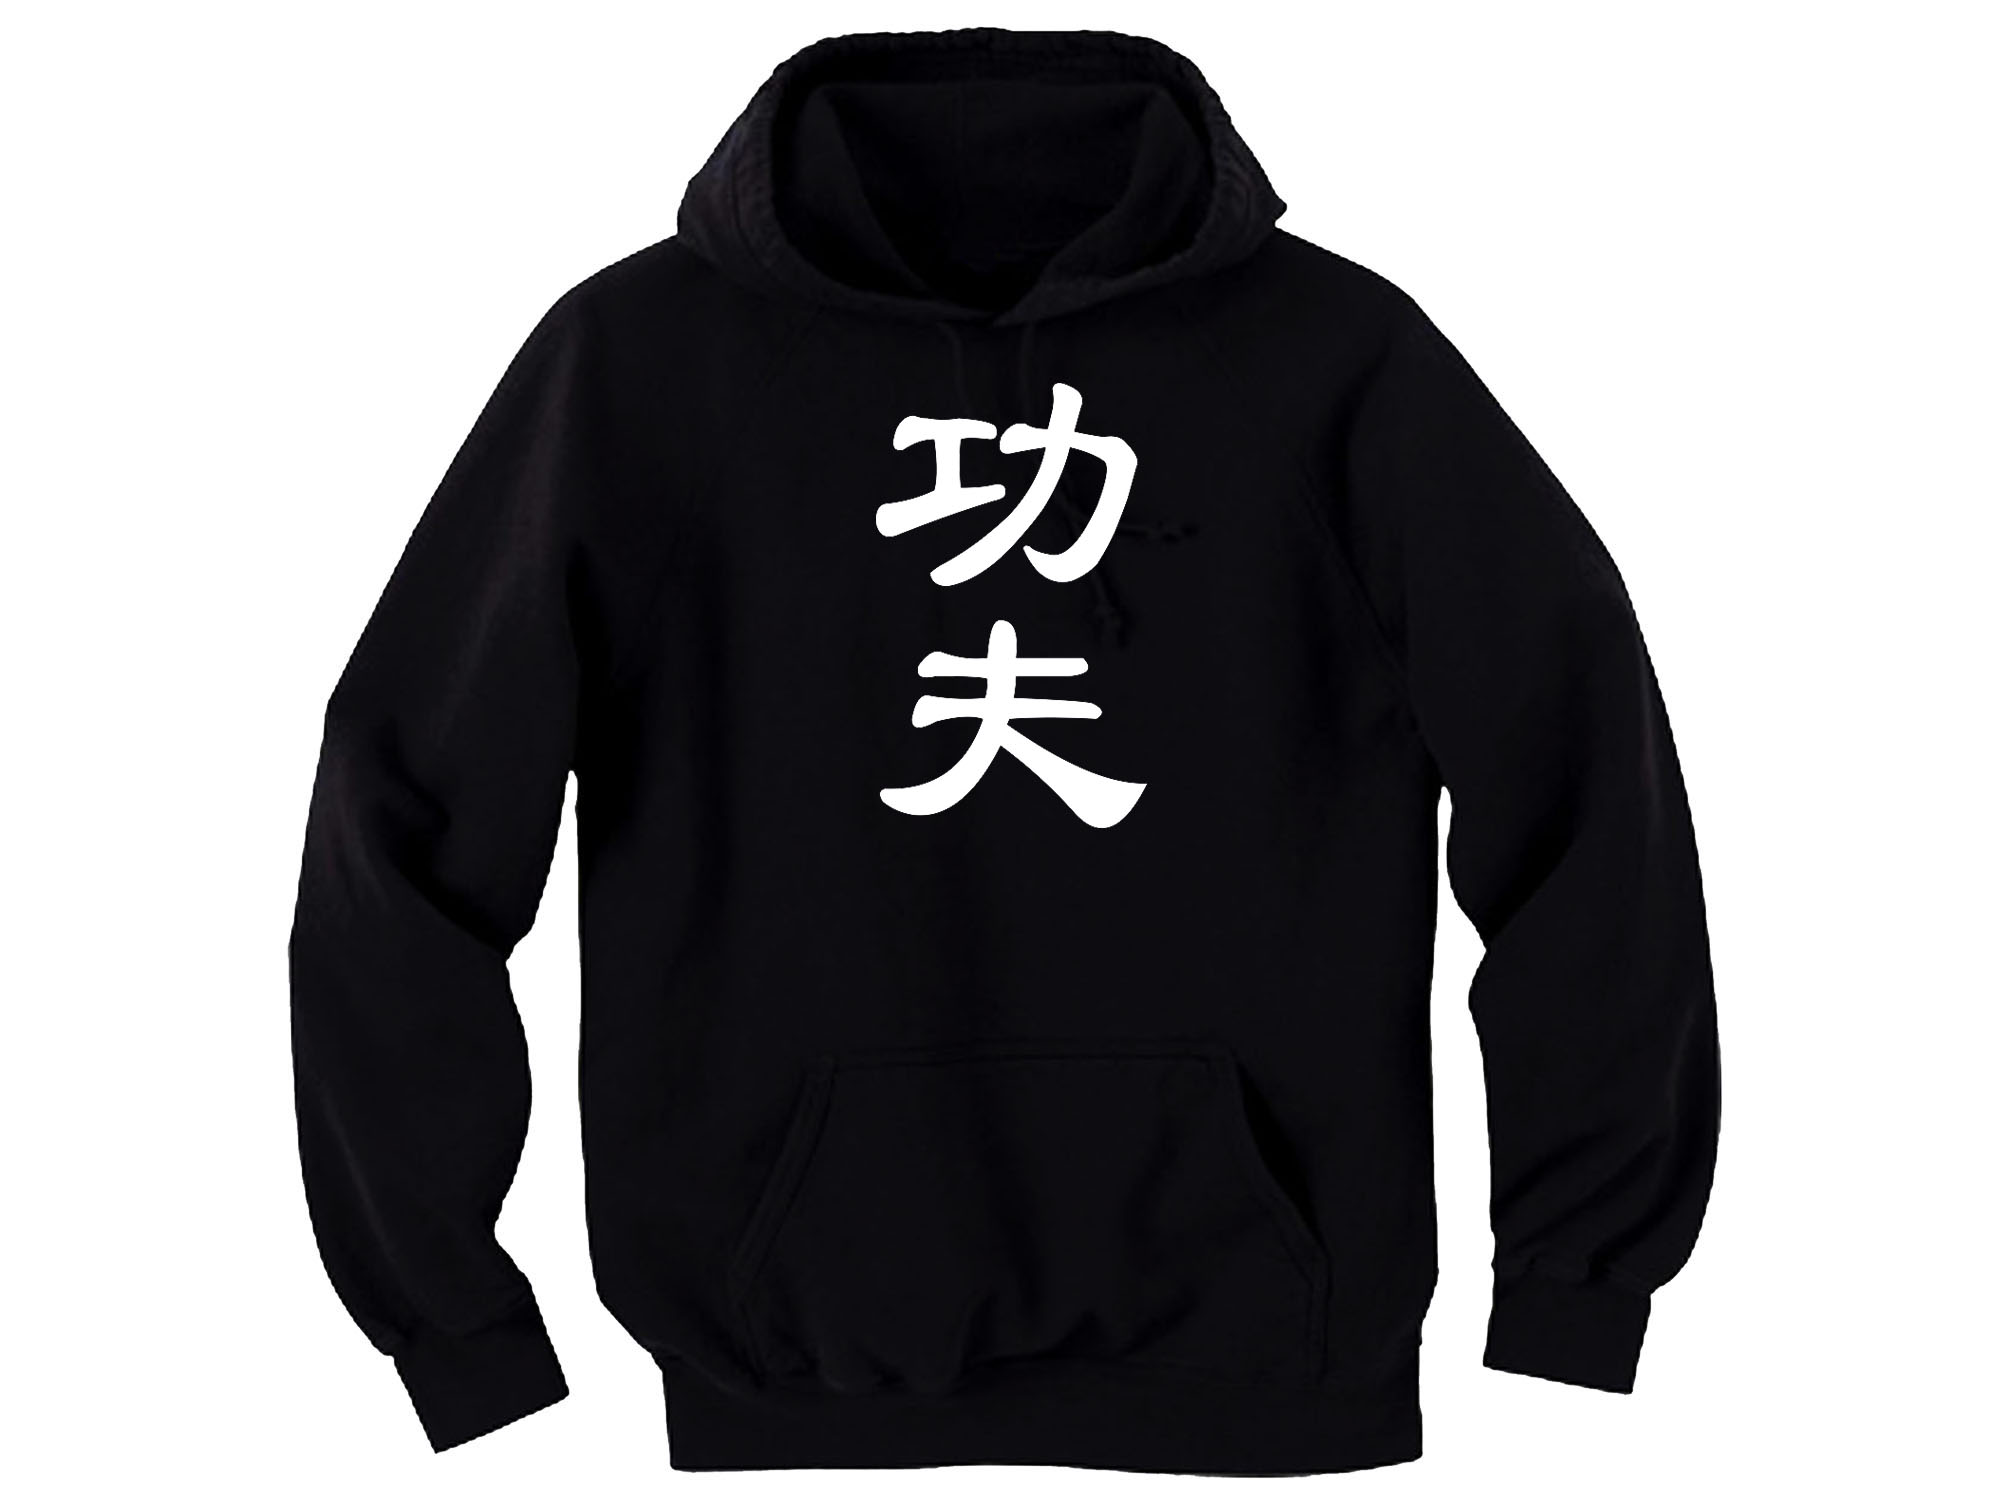 Kung fu martial arts MMA black sweatshirt hoodie